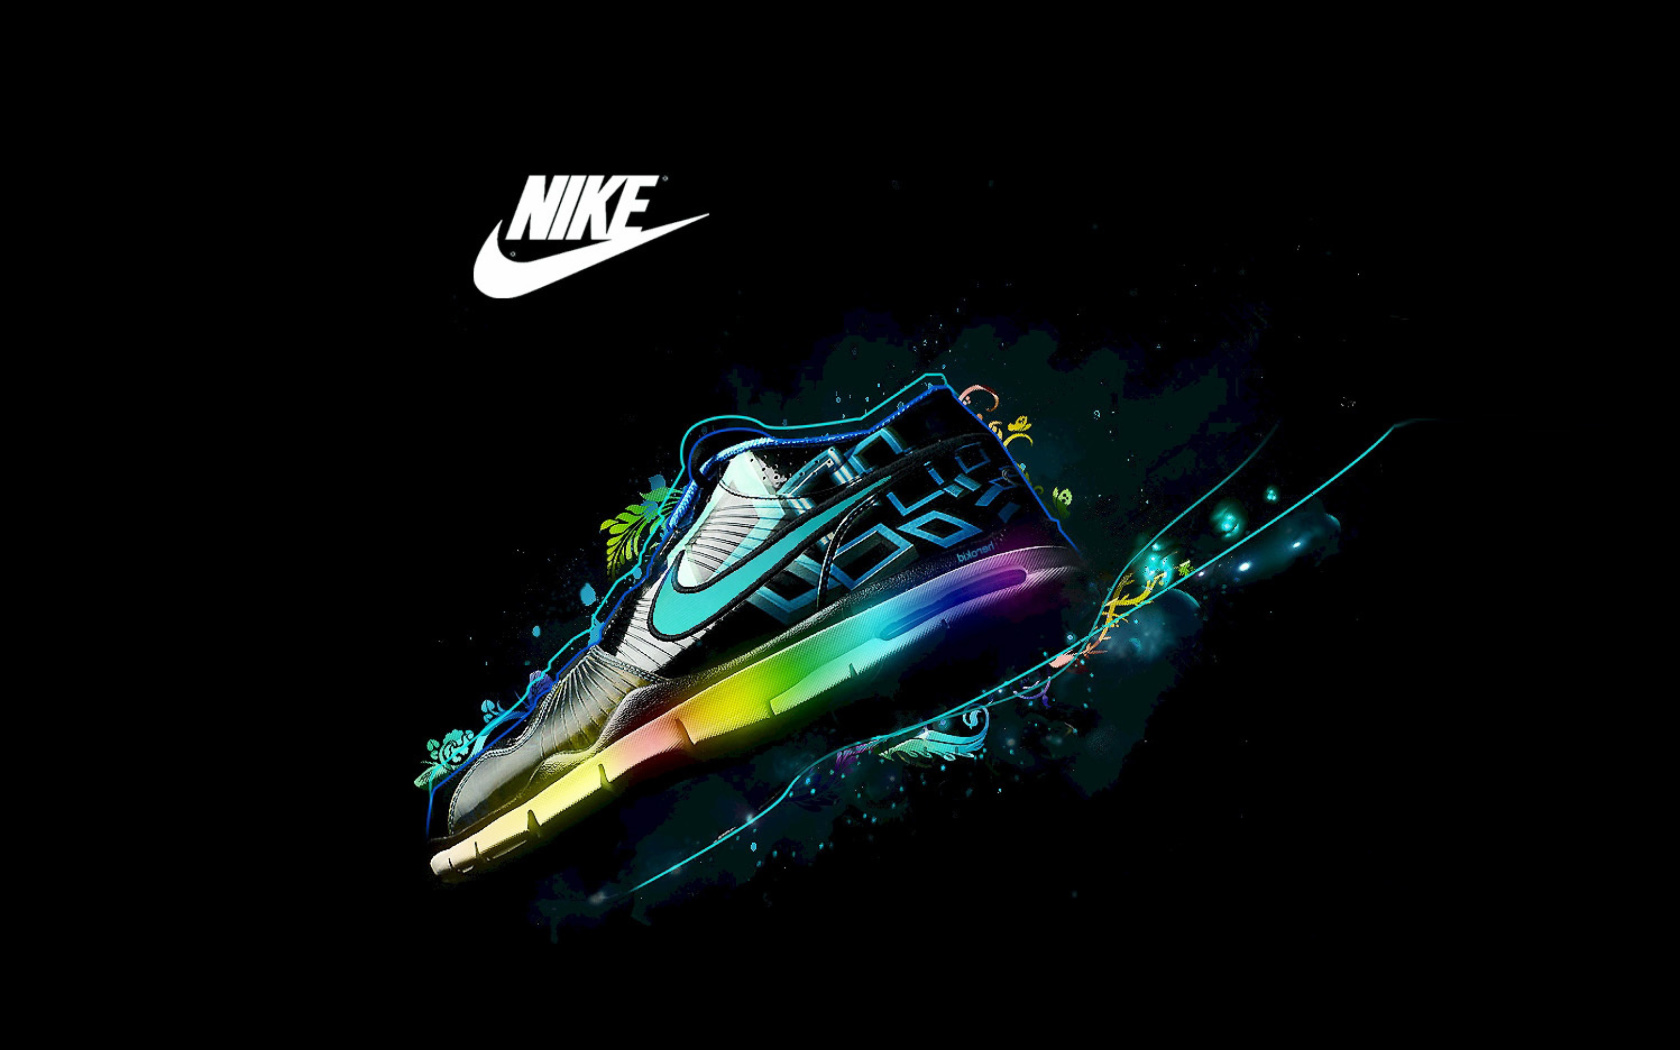 Das Nike Logo and Nike Air Shoes Wallpaper 1680x1050